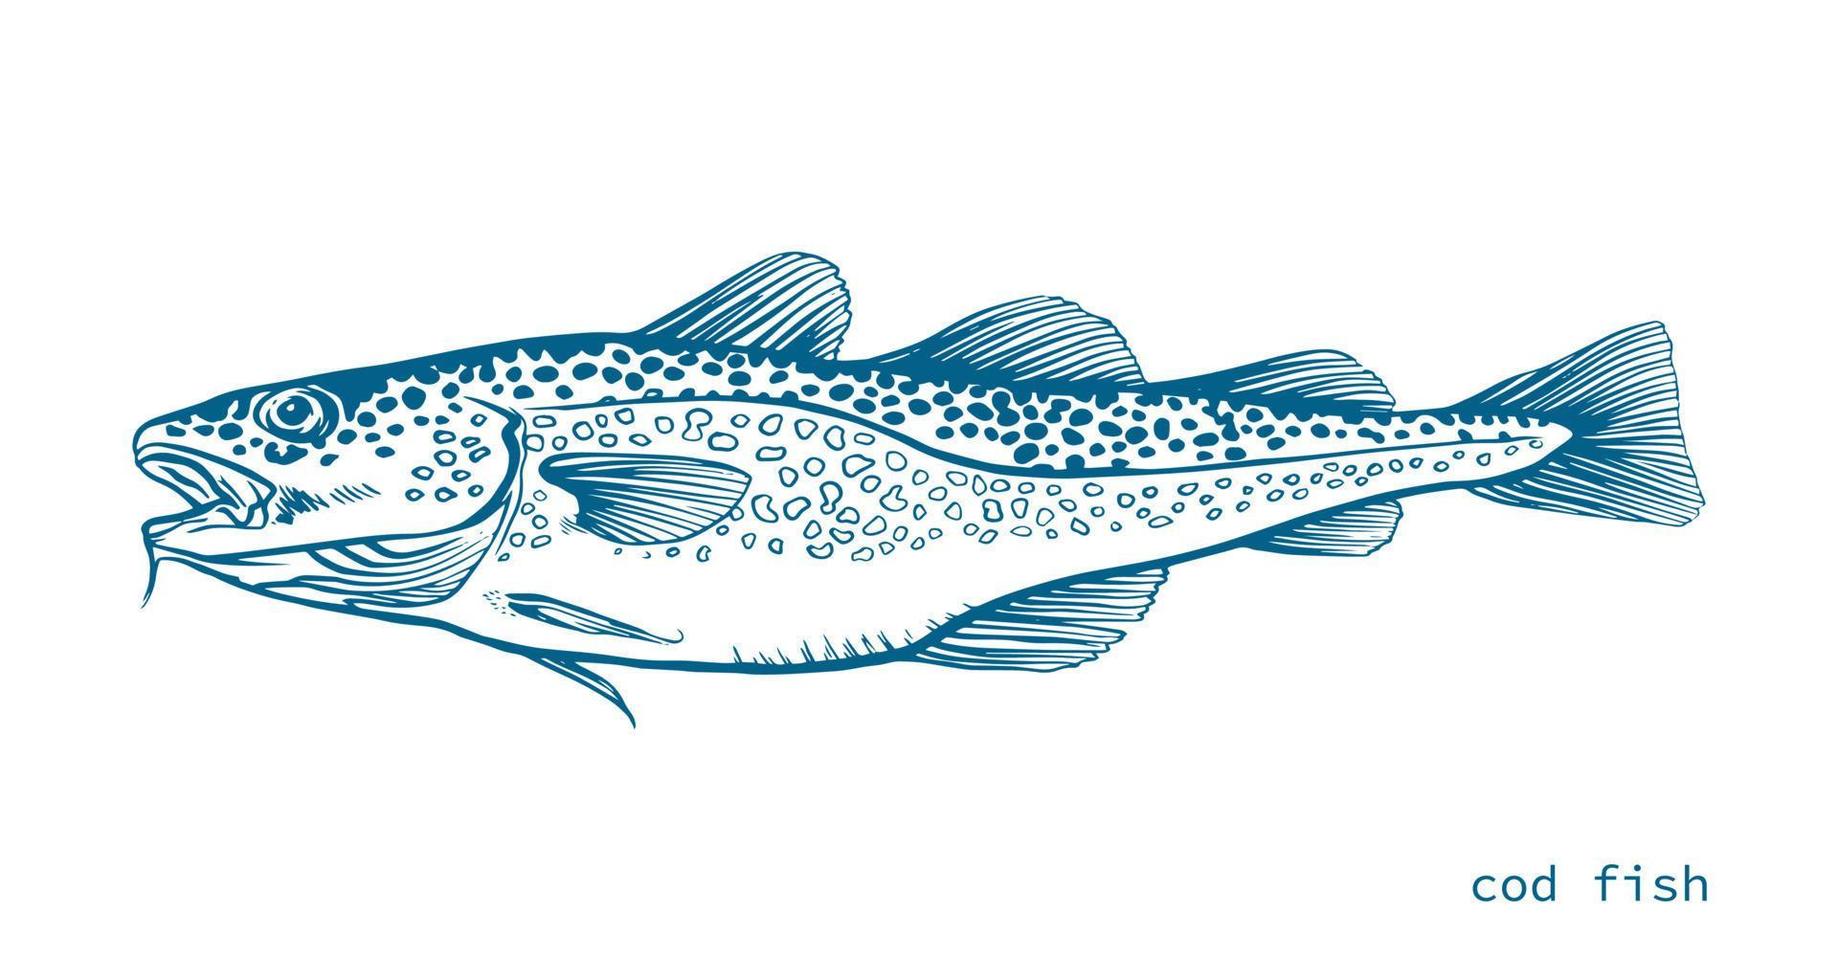 azul tinta mão desenhado vetor ilustração do bacalhau peixe, gadus morhua, em branco fundo